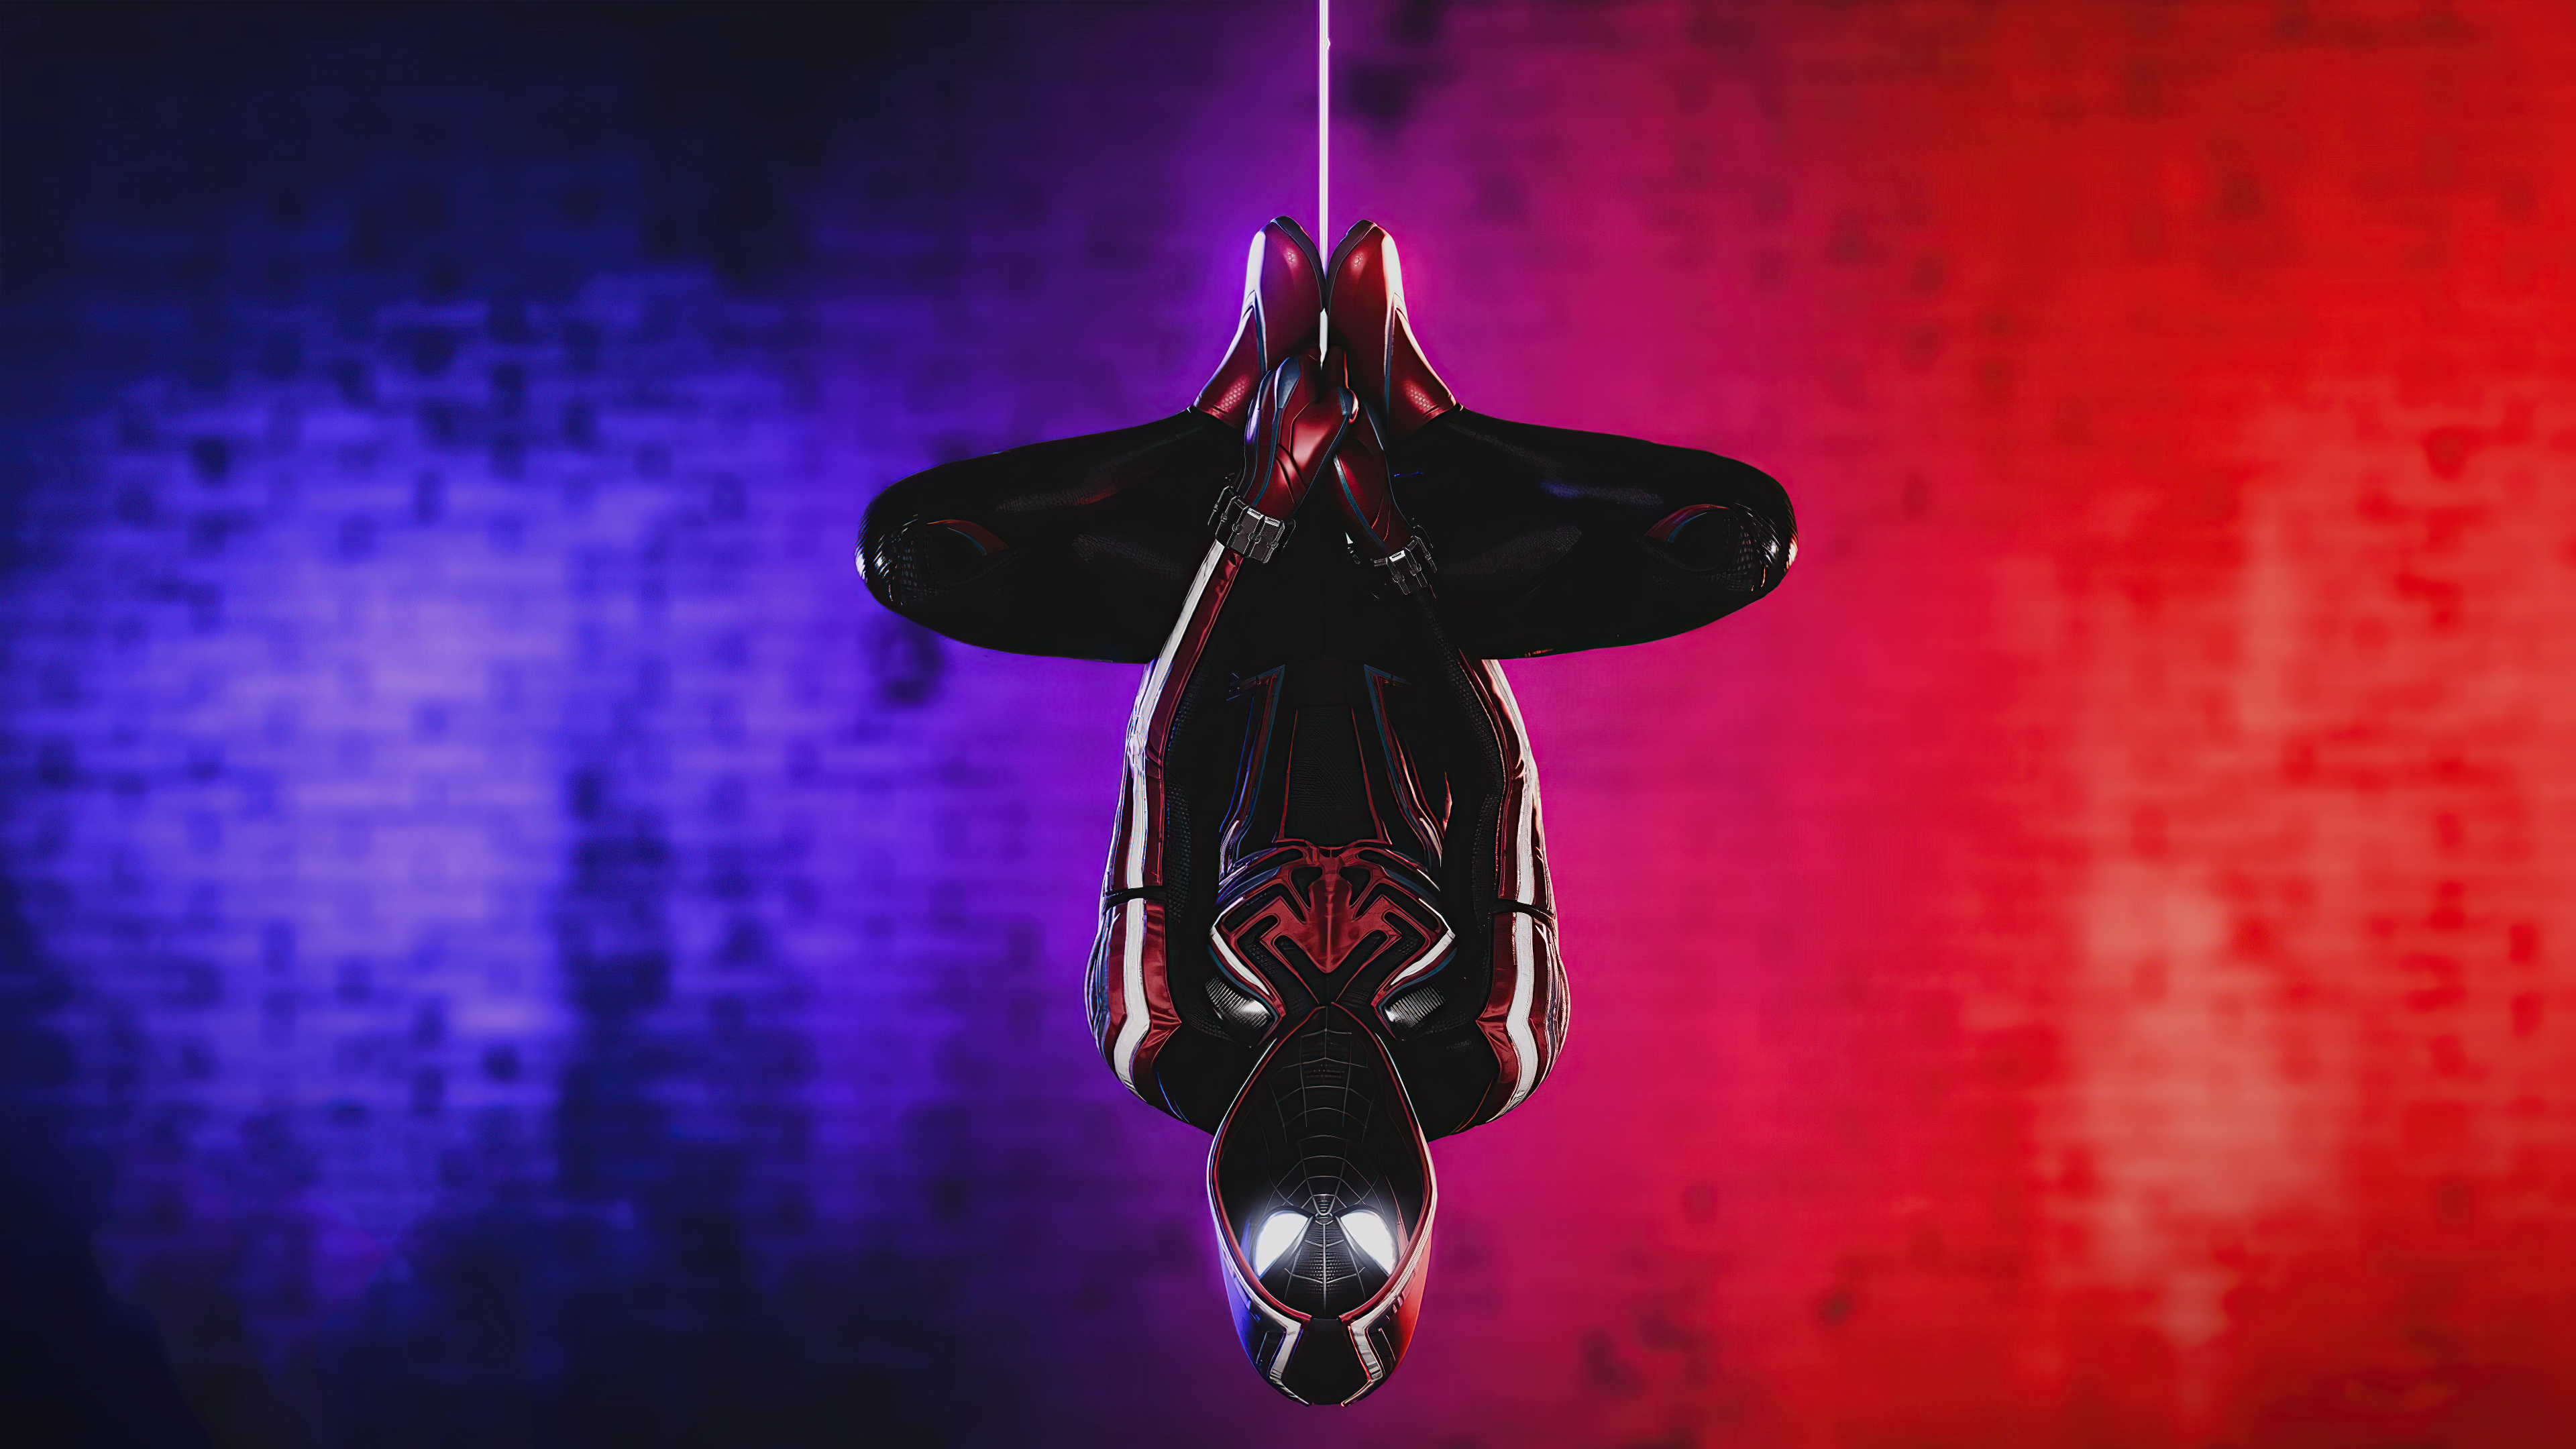 39+] Miles Morales Spiderman Wallpapers - WallpaperSafari